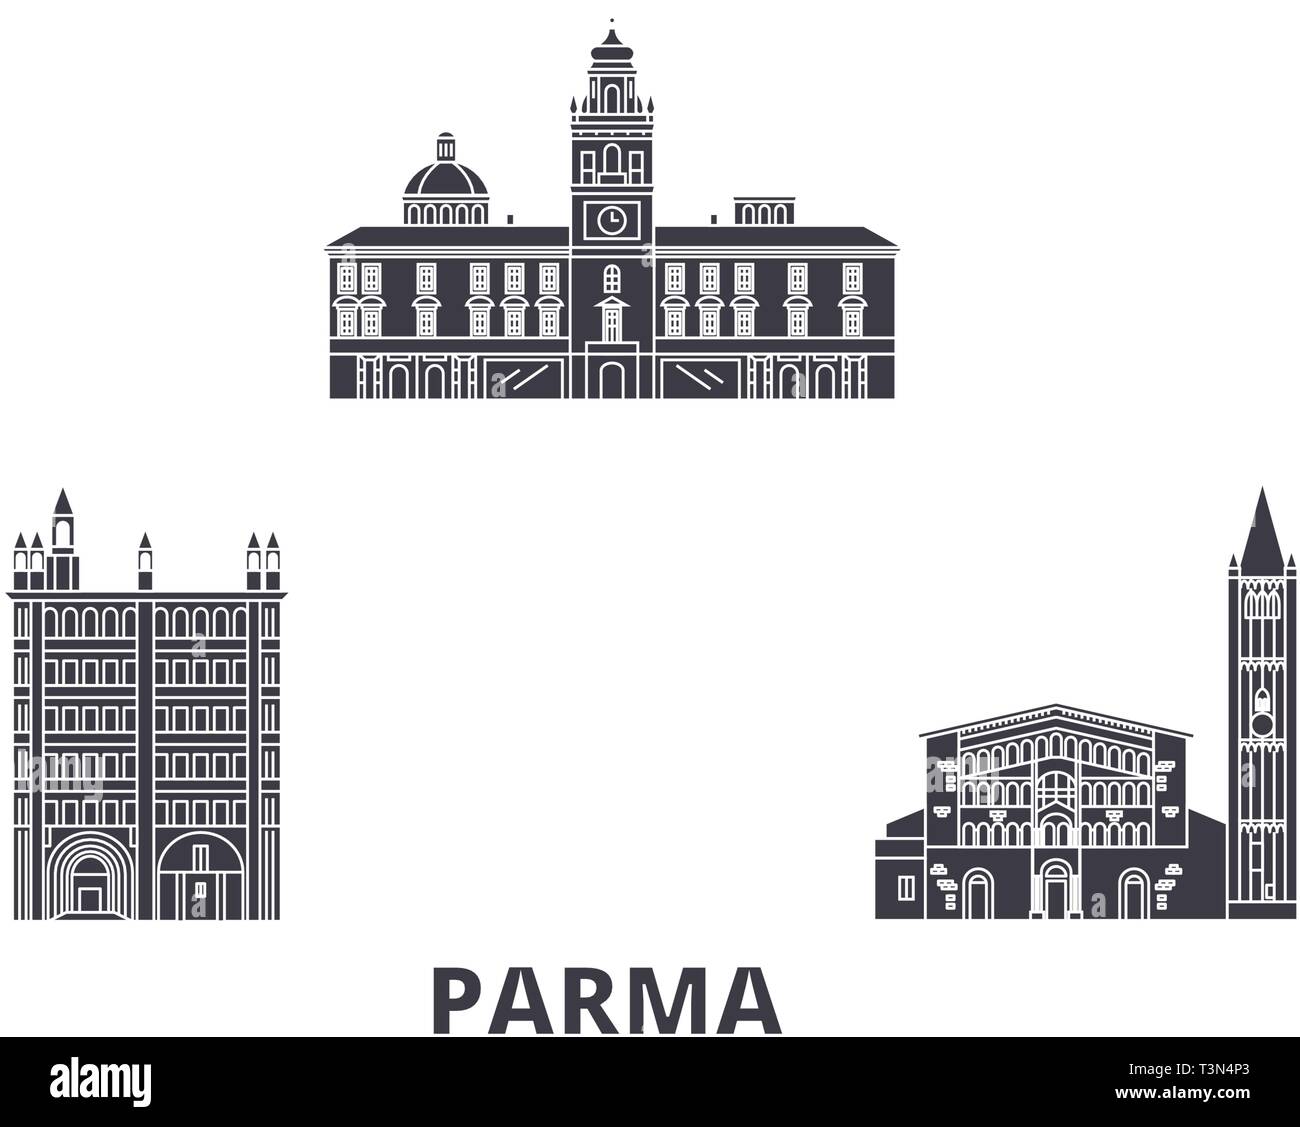 Italien, Parma Flachbild reisen Skyline. Italien, Parma schwarz Stadt Vektor-illustration, Symbol, Reisen, Sehenswürdigkeiten, Wahrzeichen. Stock Vektor